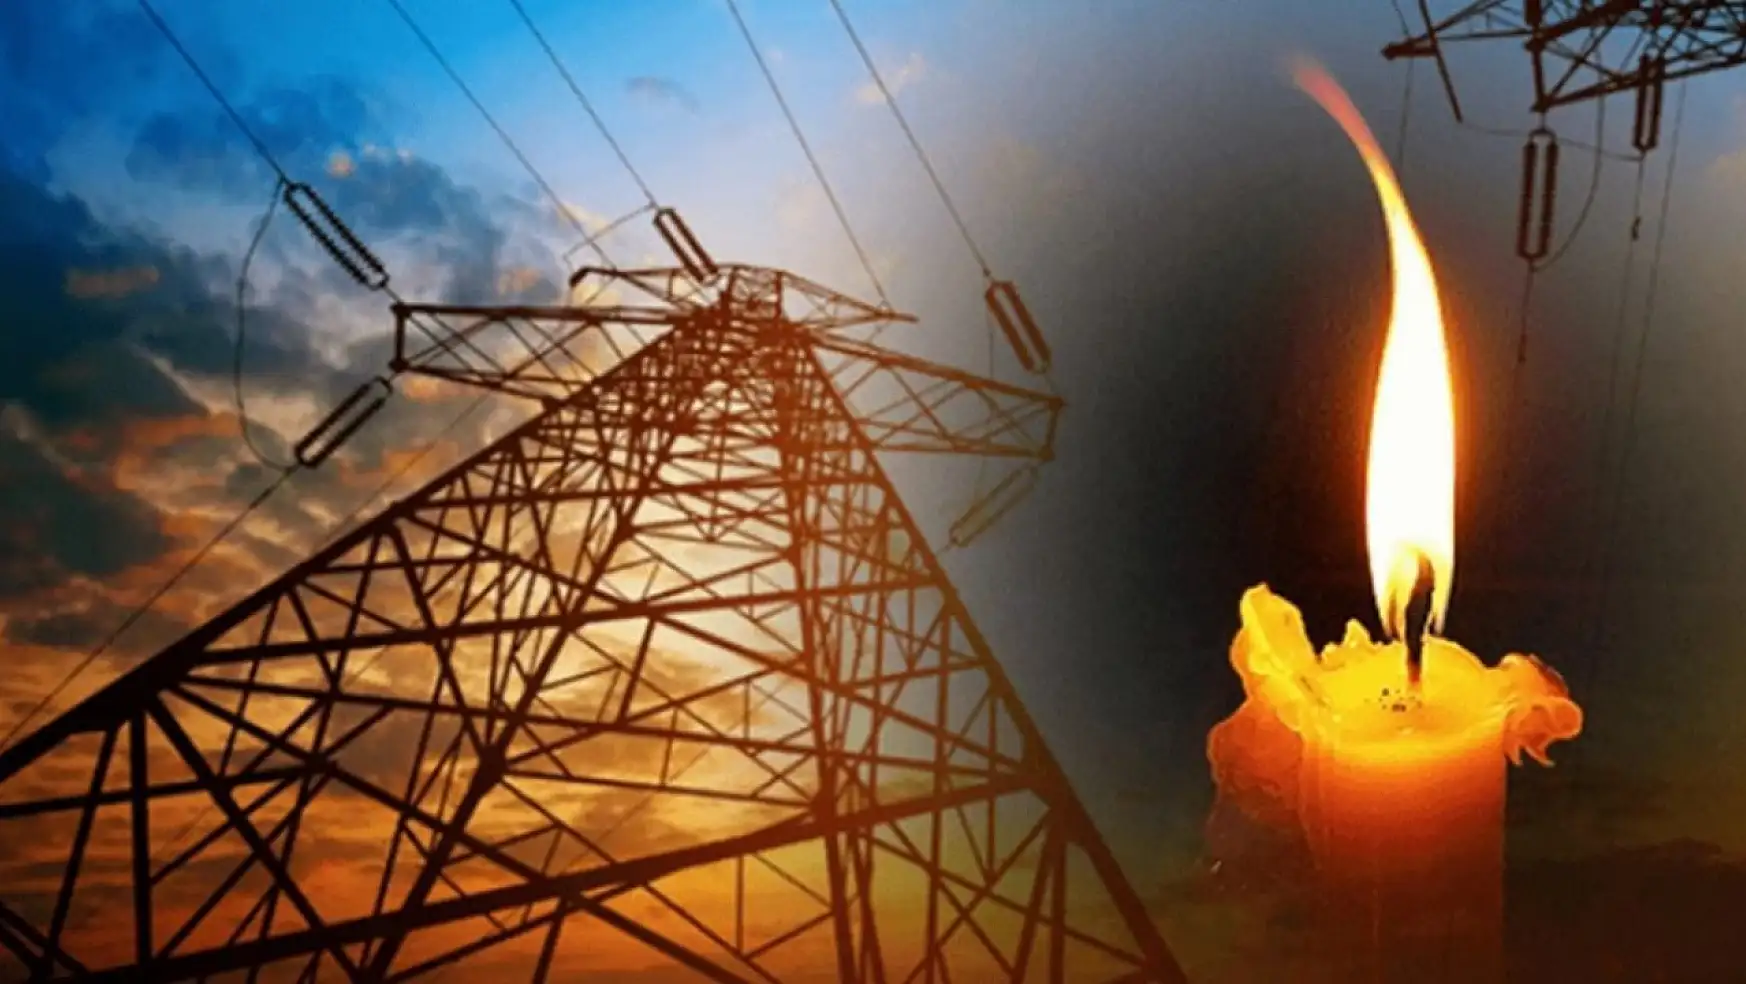 Muğla'nın 3 ilçesinde yarın elektrikler gidecek! 23 Aralık elektrik kesintisi detayları..